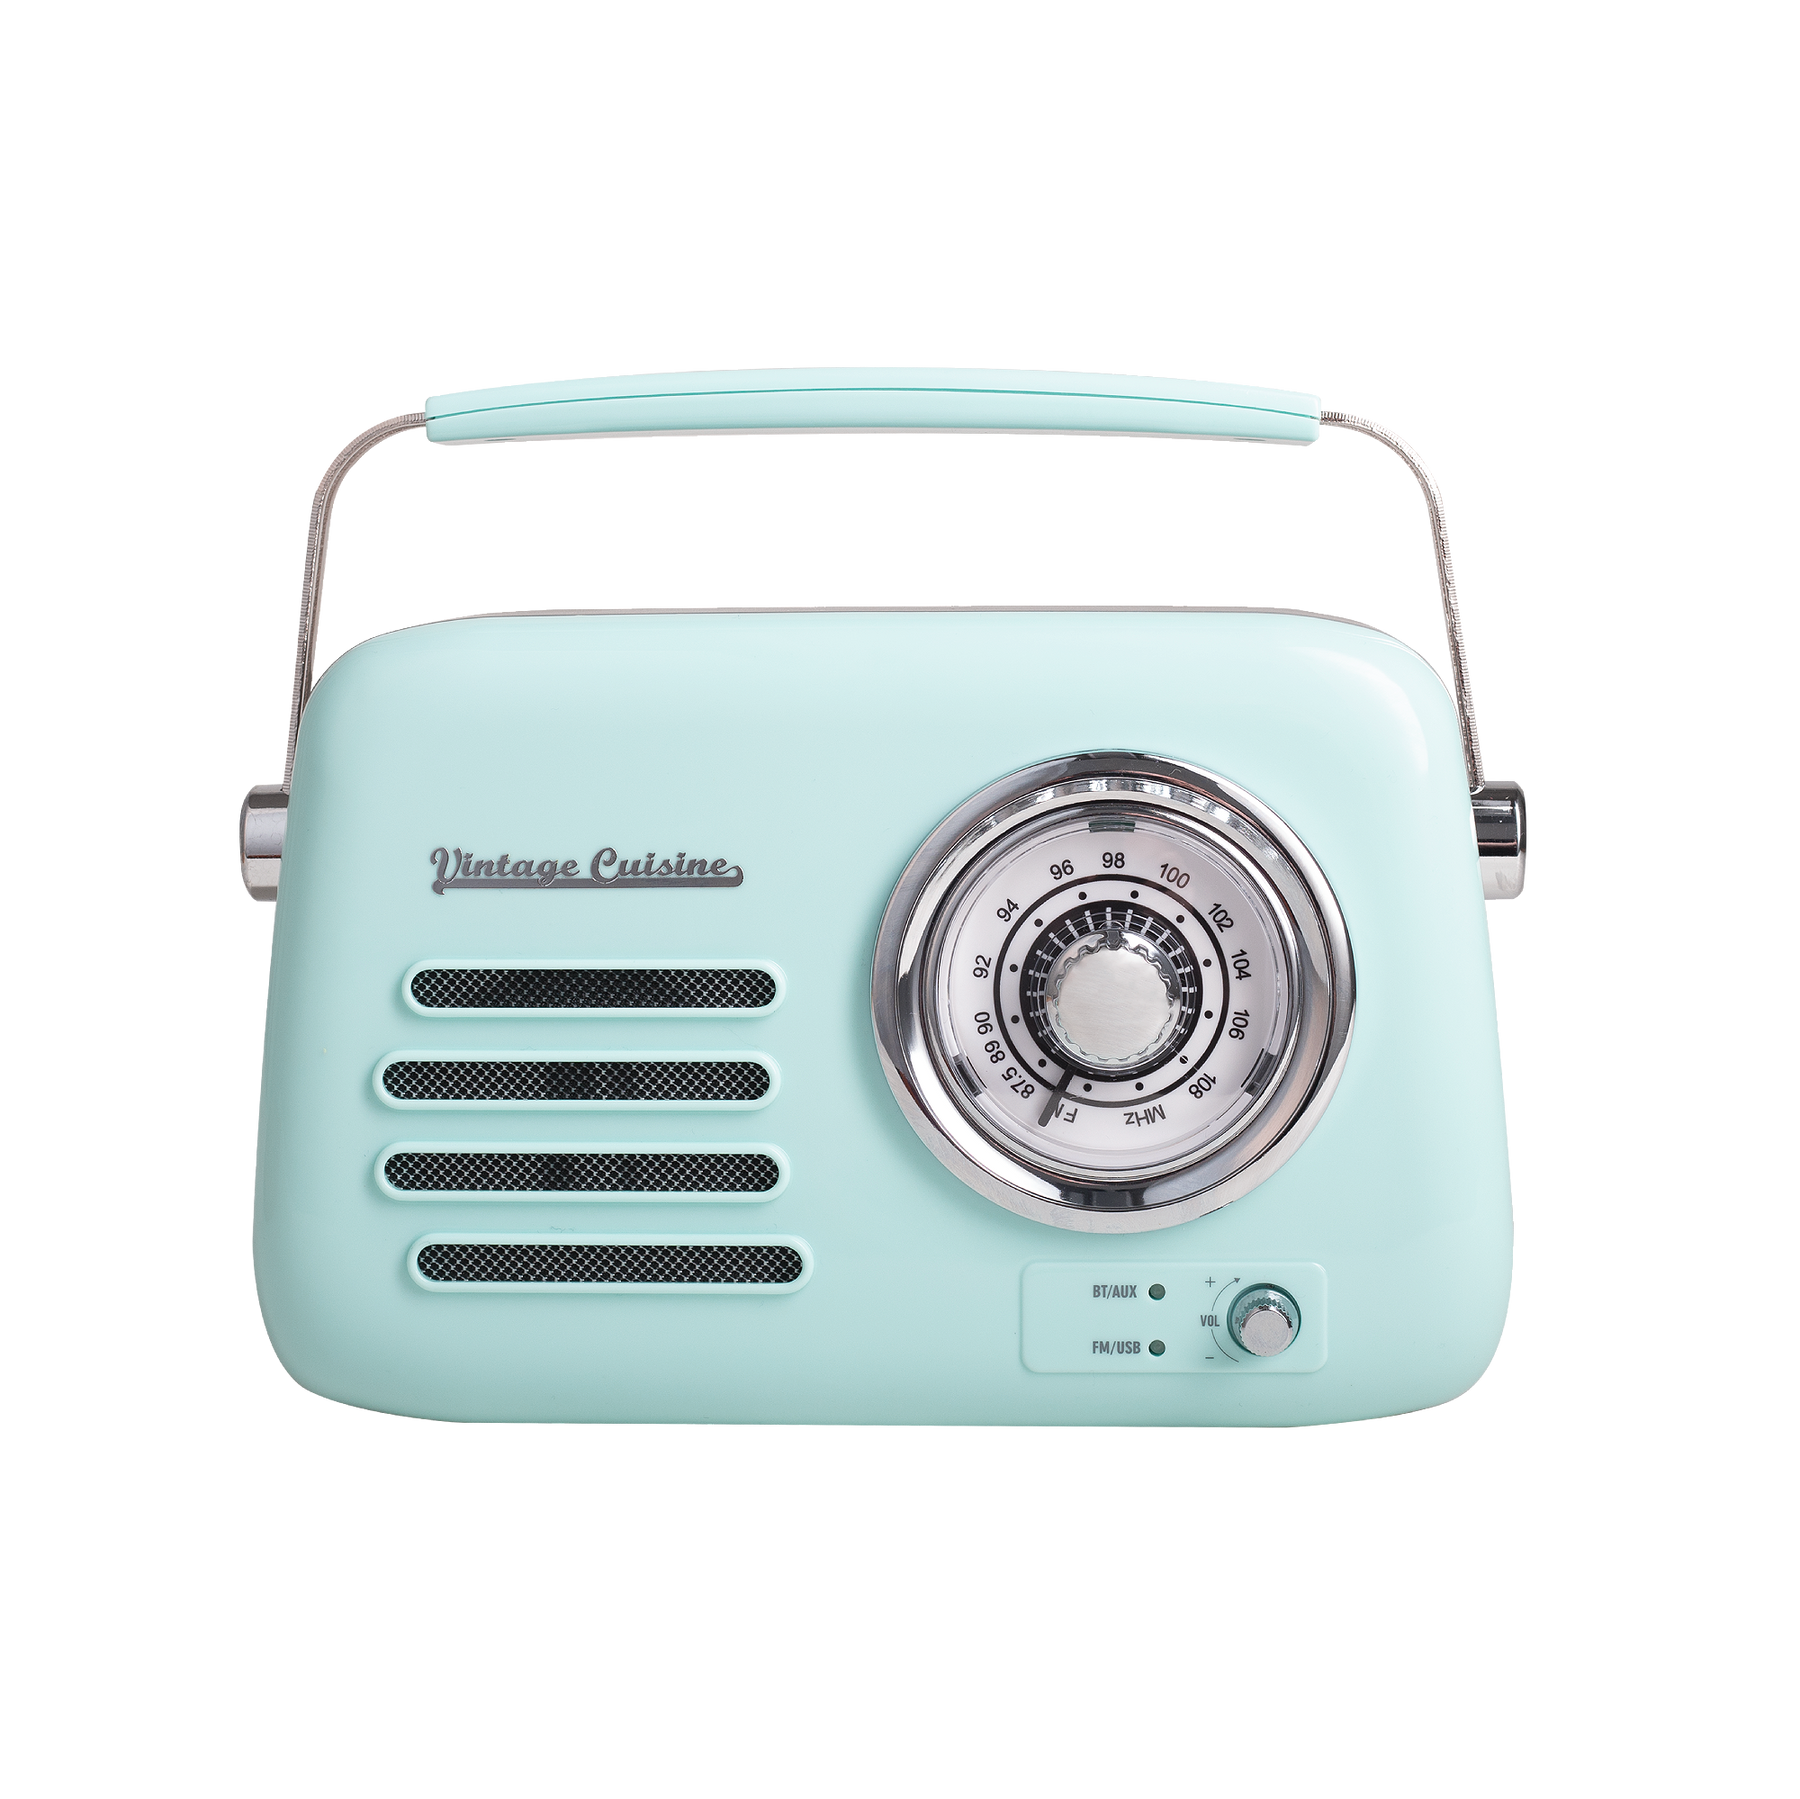 Radio chromée rétro Vintage Cuisine avec haut-parleur Bluetooth 2.0